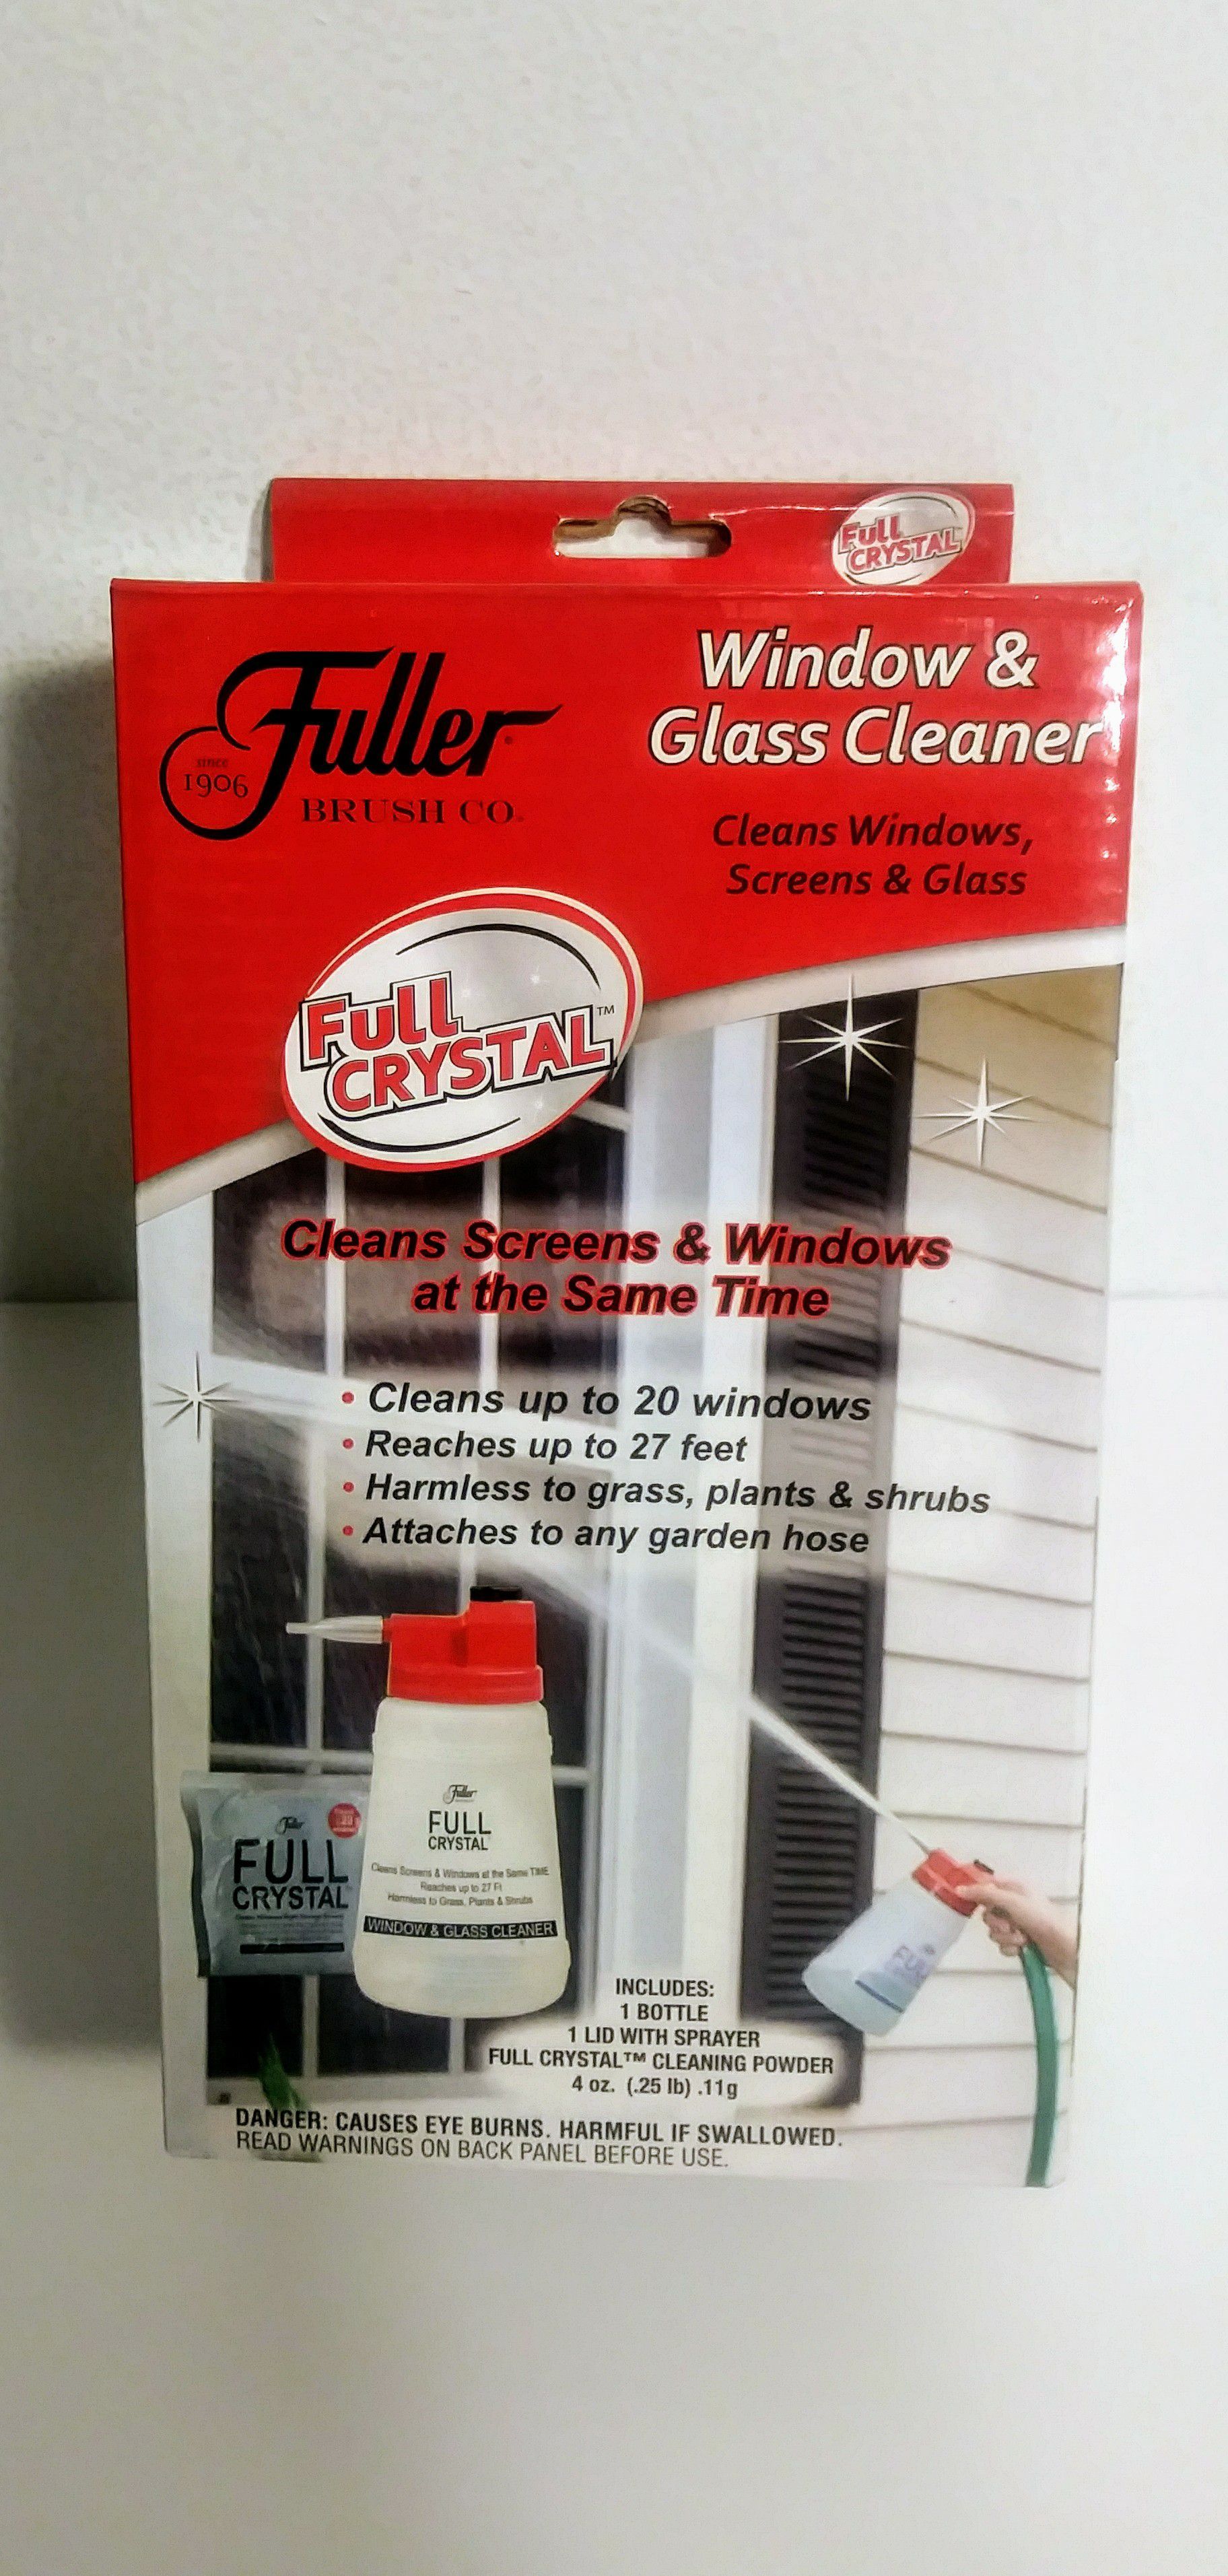 Fuller Brush Co. Full Crystal Window & Glass Cleaner w/Spray Bottle